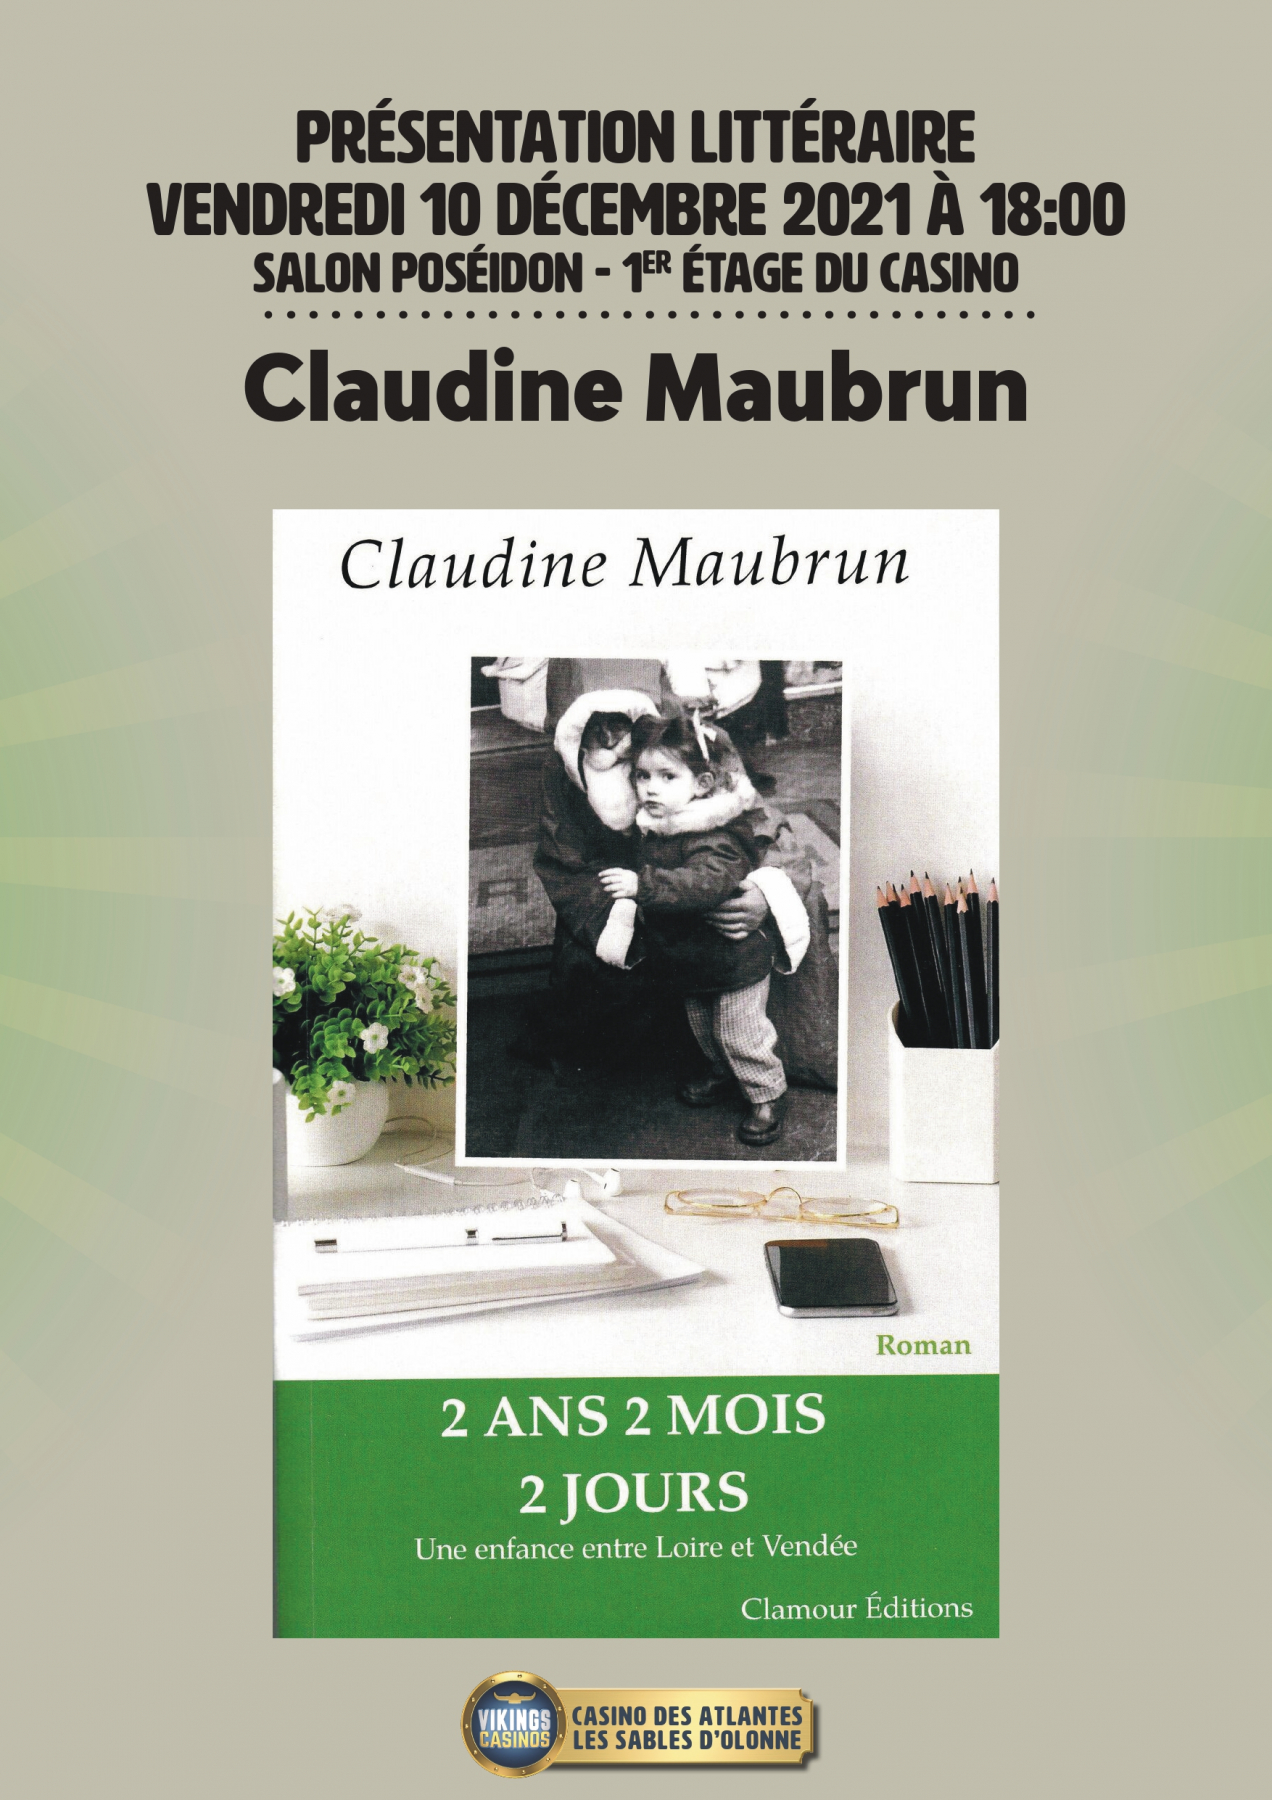 Claudine MAUBRUN : 2 ANS 2 MOIS 2 JOURS